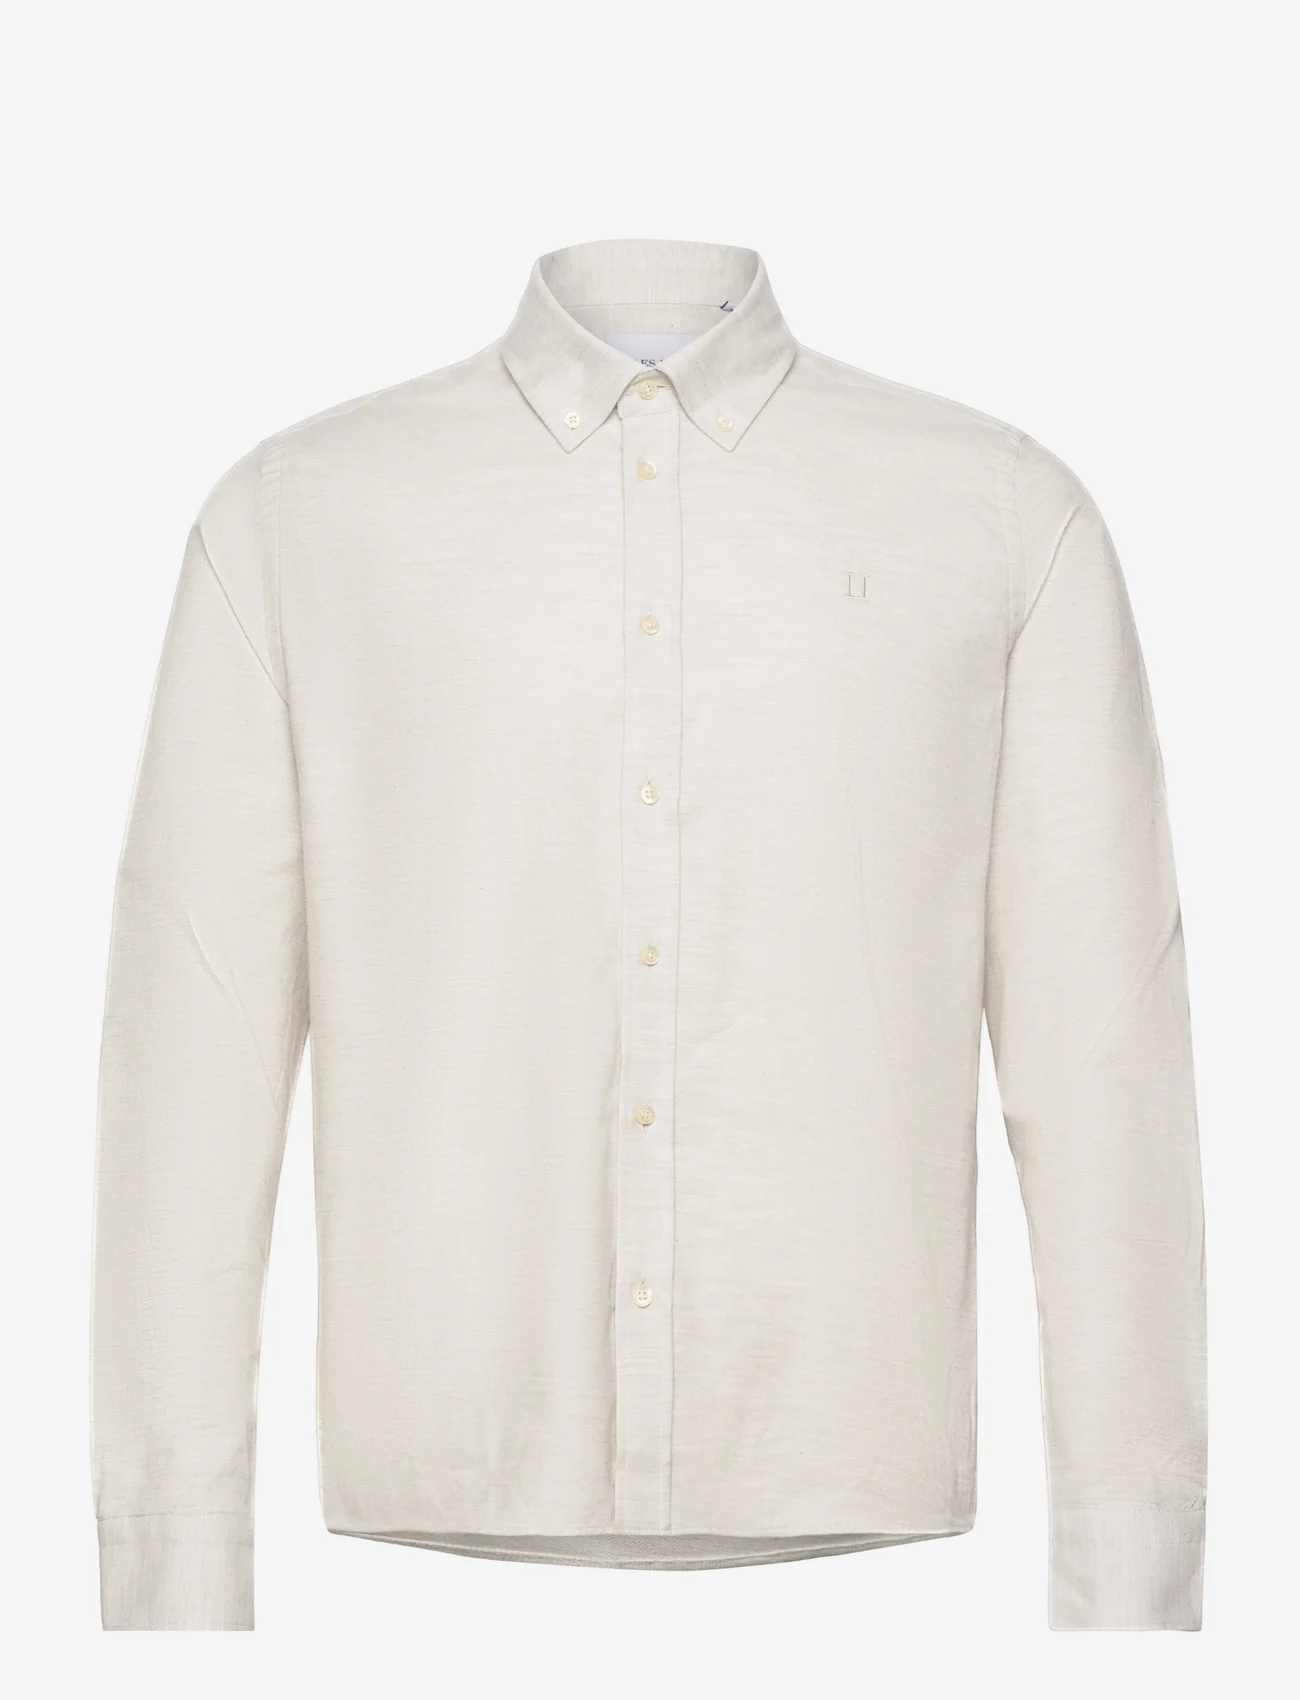 Les Deux - Desert Reg Shirt - basic skjorter - snow melange - 0